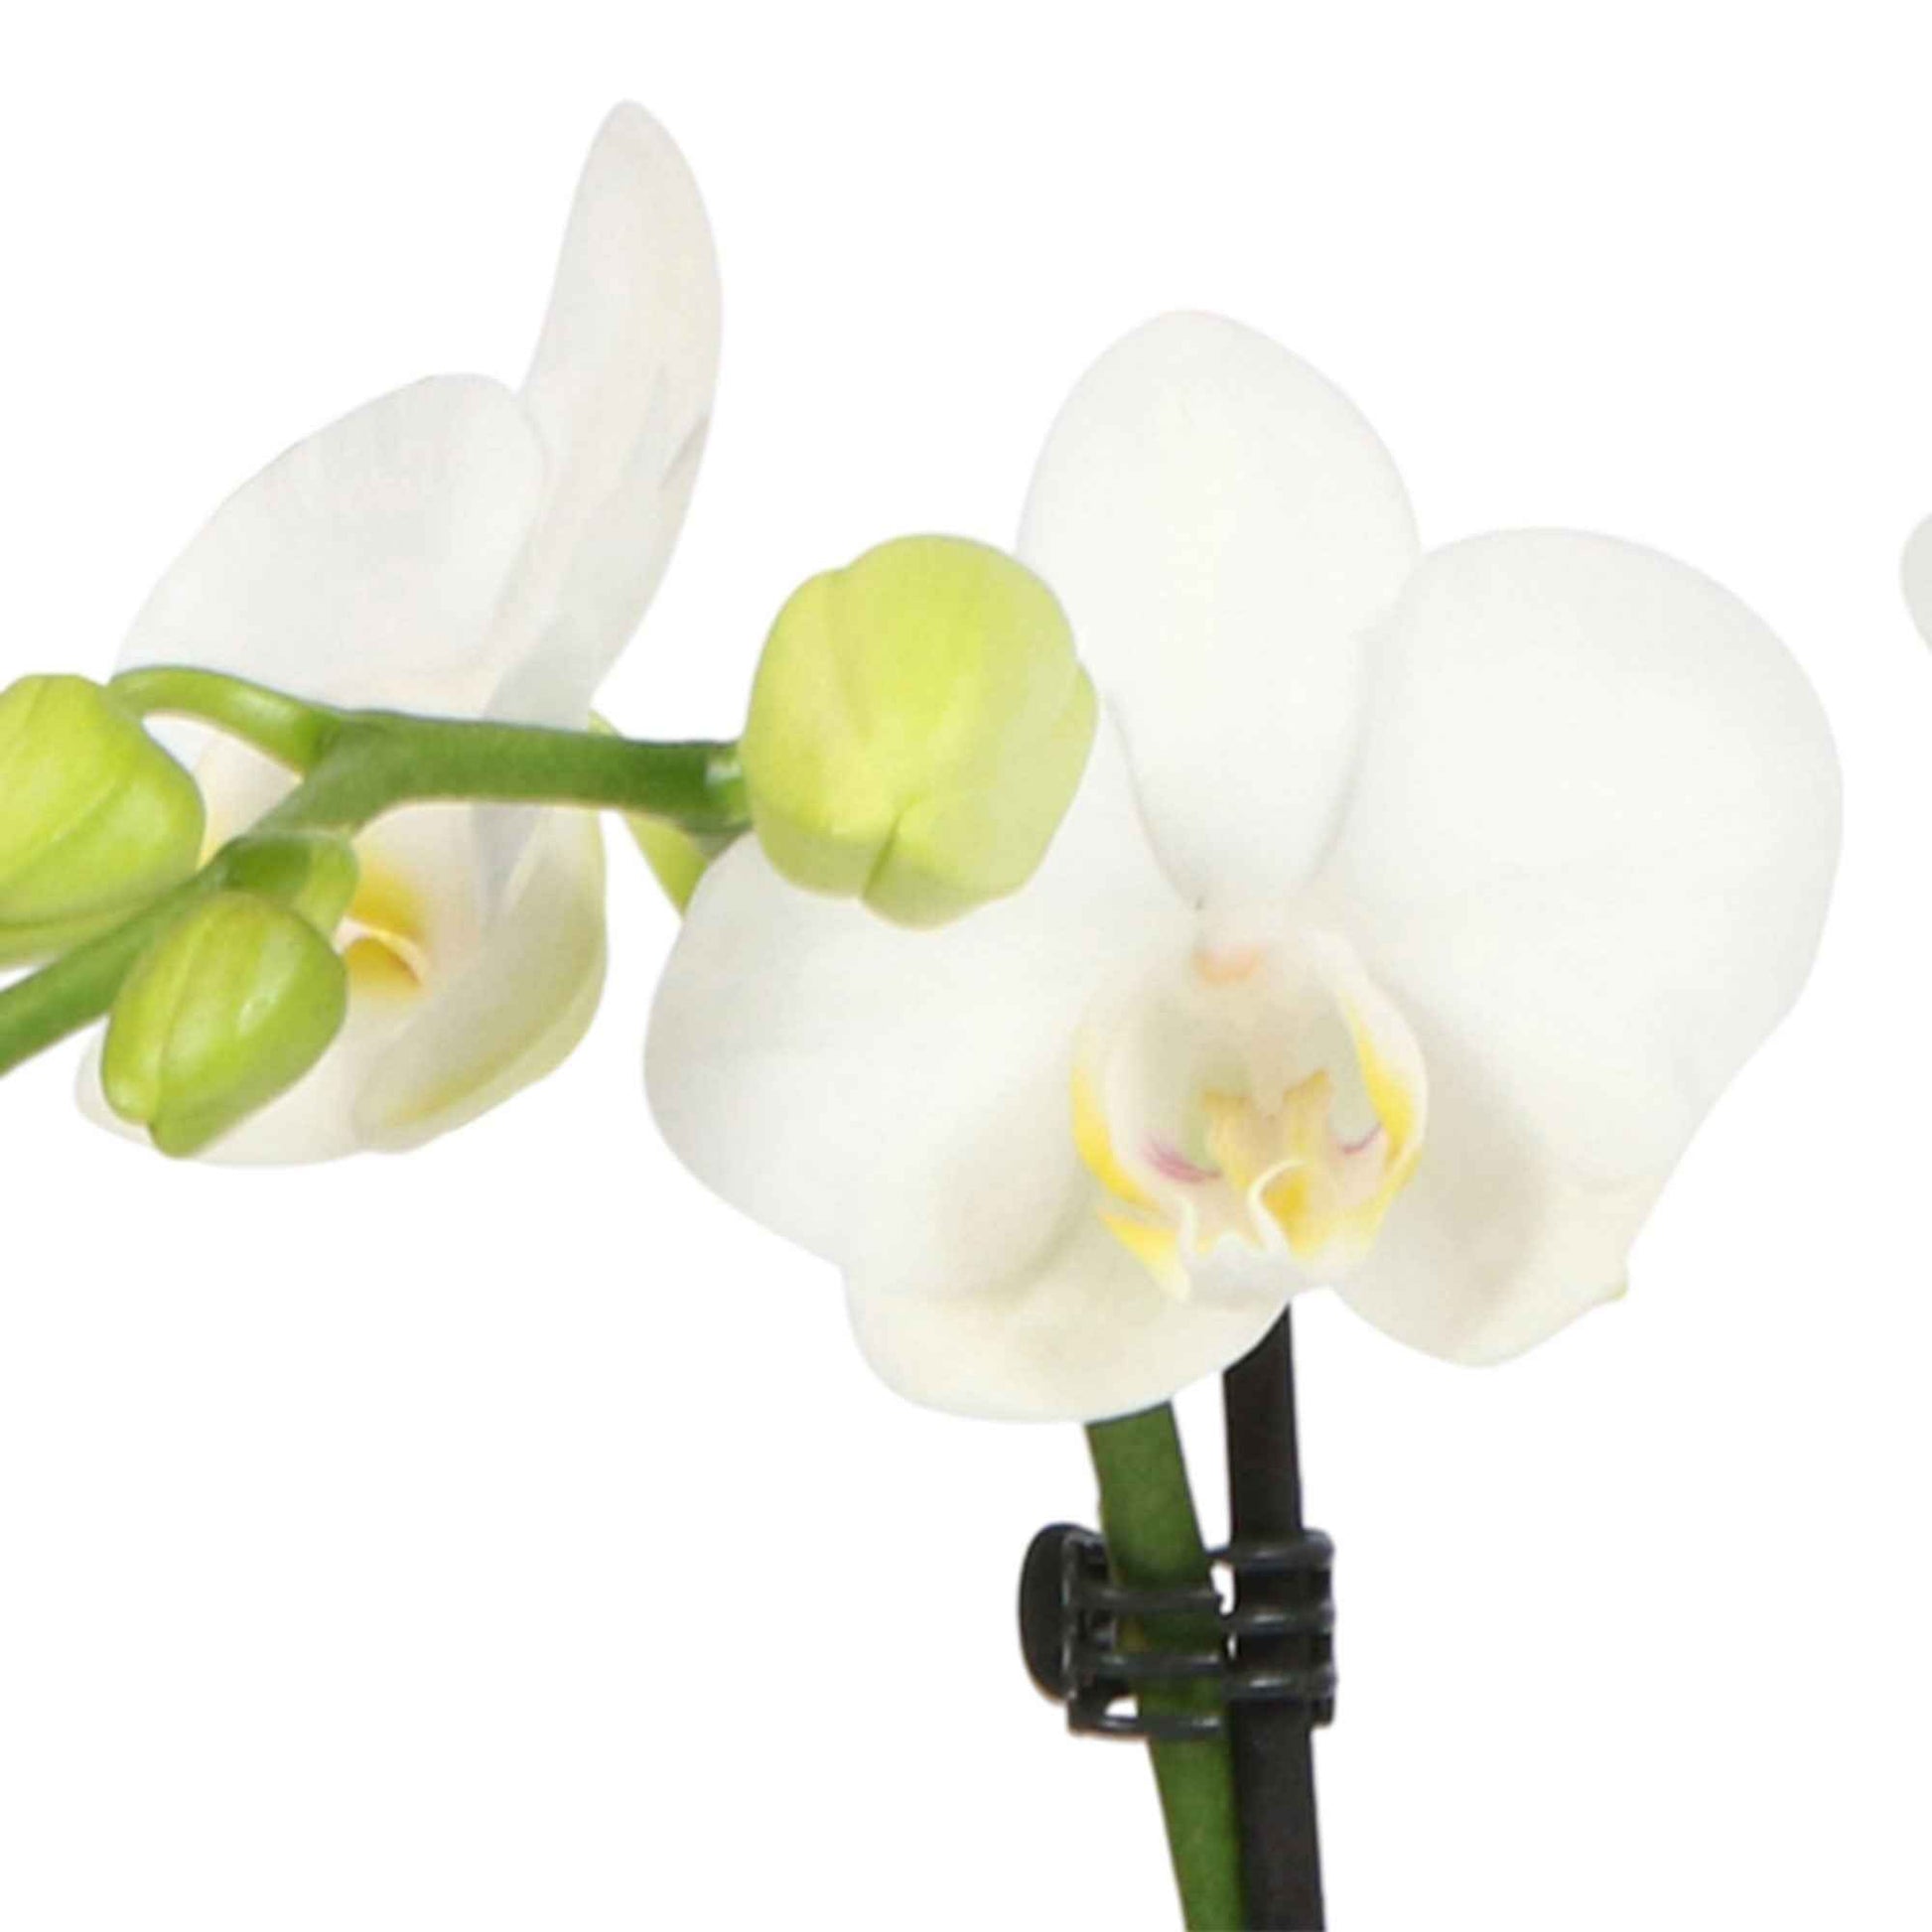 Vlinderorchidee Phalaenopsis 'Amabilis' incl. sierpot grijs - Binnenplant in pot cadeau